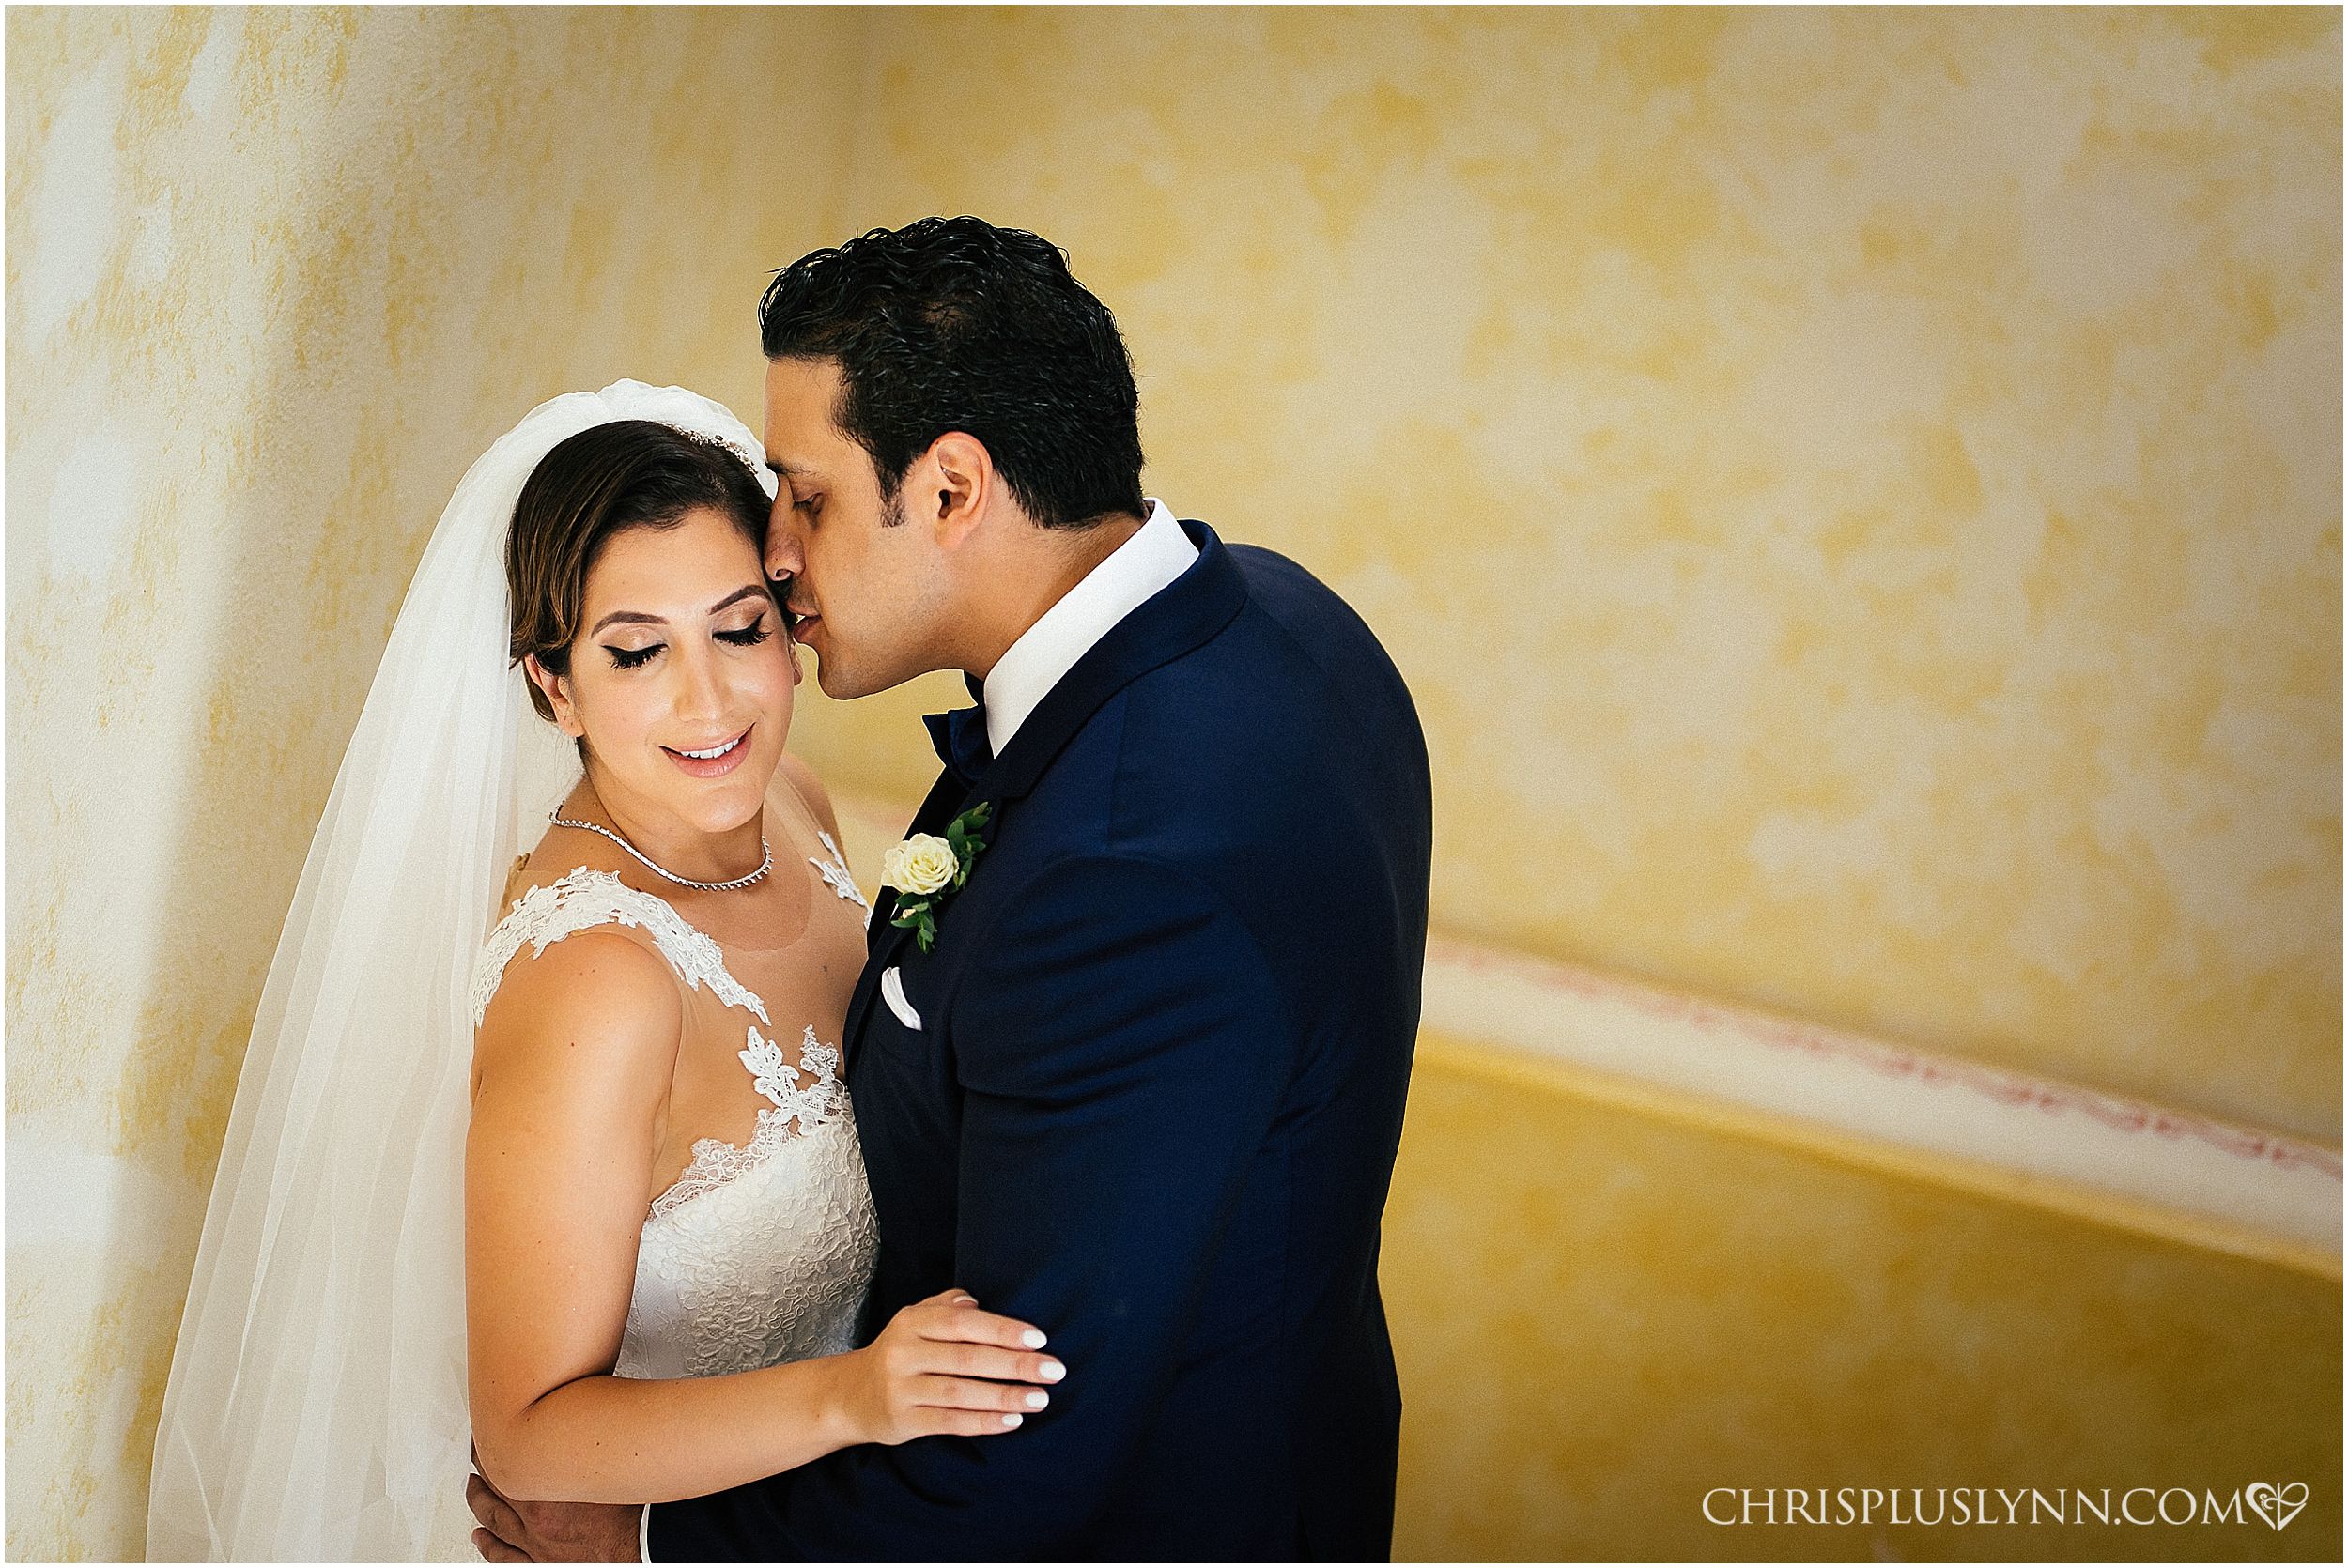 Cabo del Sol Wedding | First Look Bride + Groom Portrait